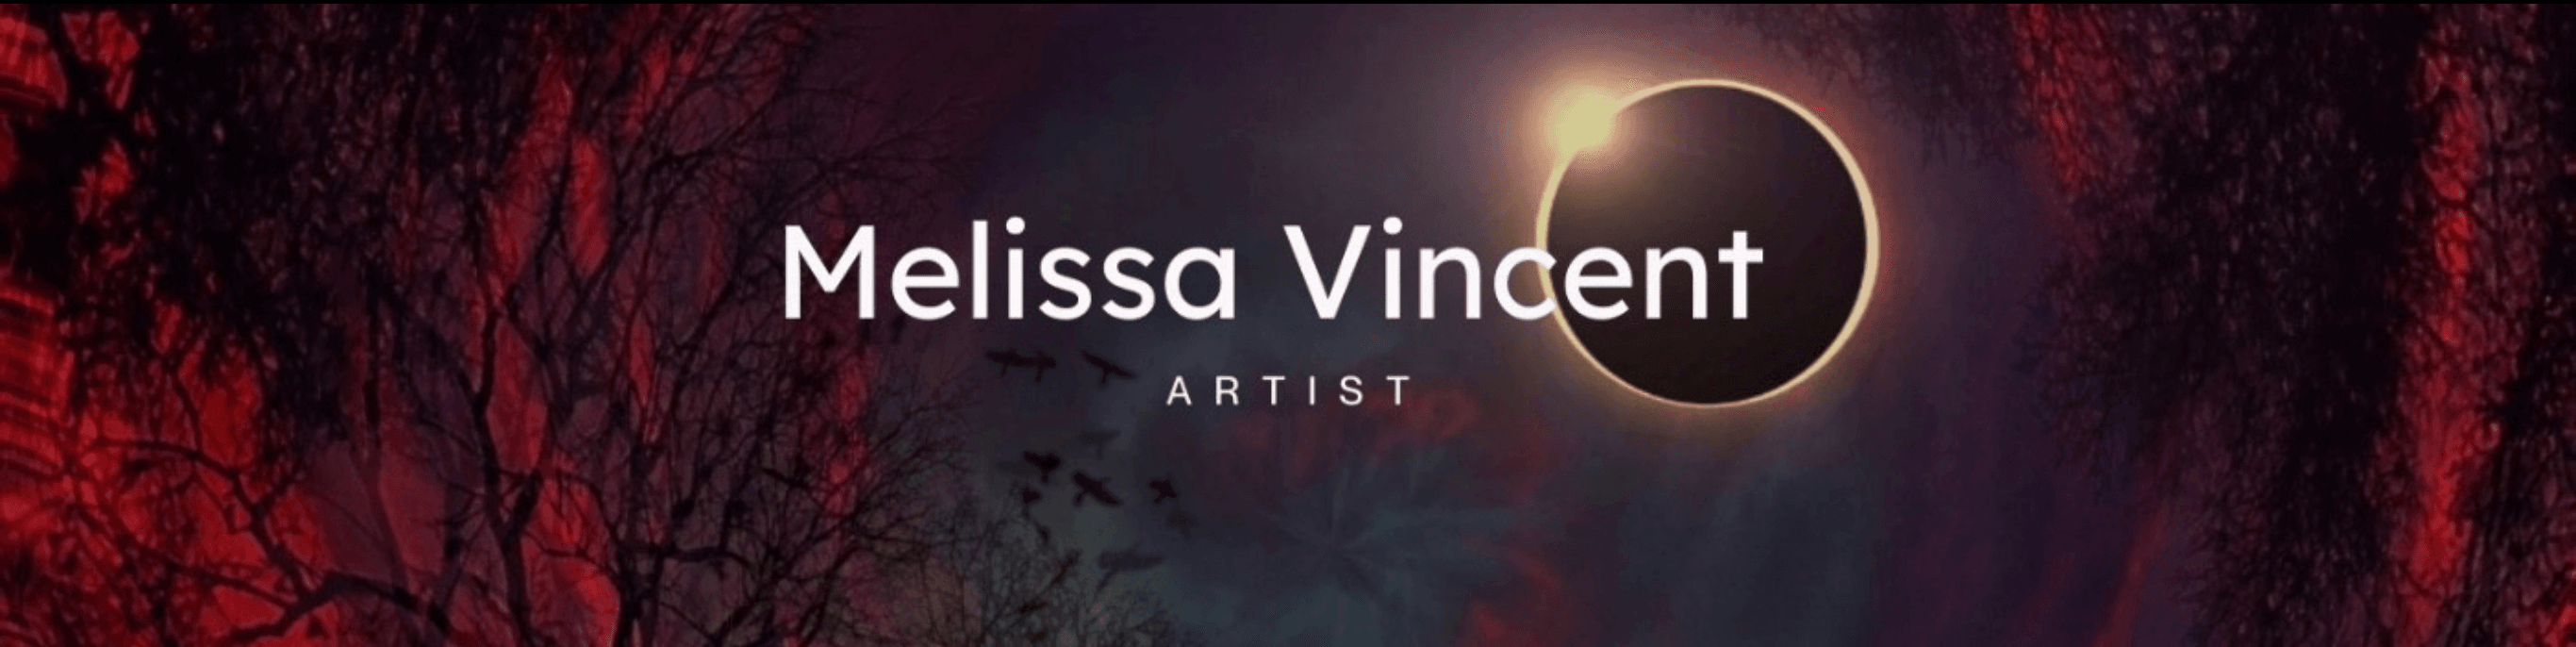 Melissa_Vincent banner